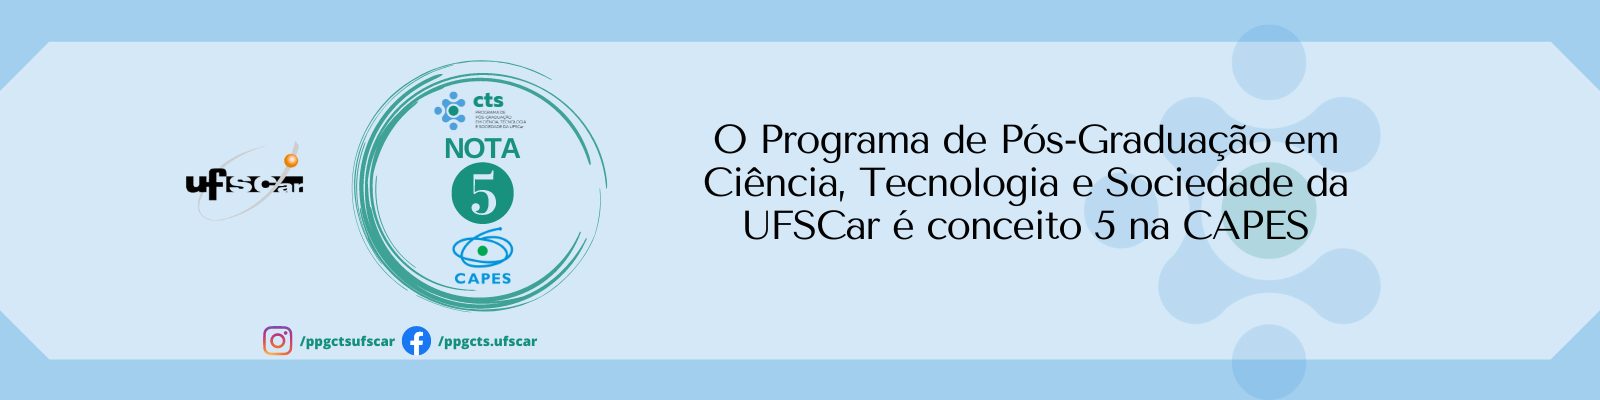 O Programa de Pós-Graduação em Ciência, Tecnologia e Sociedade da UFSCar é conceito 5 na CAPES